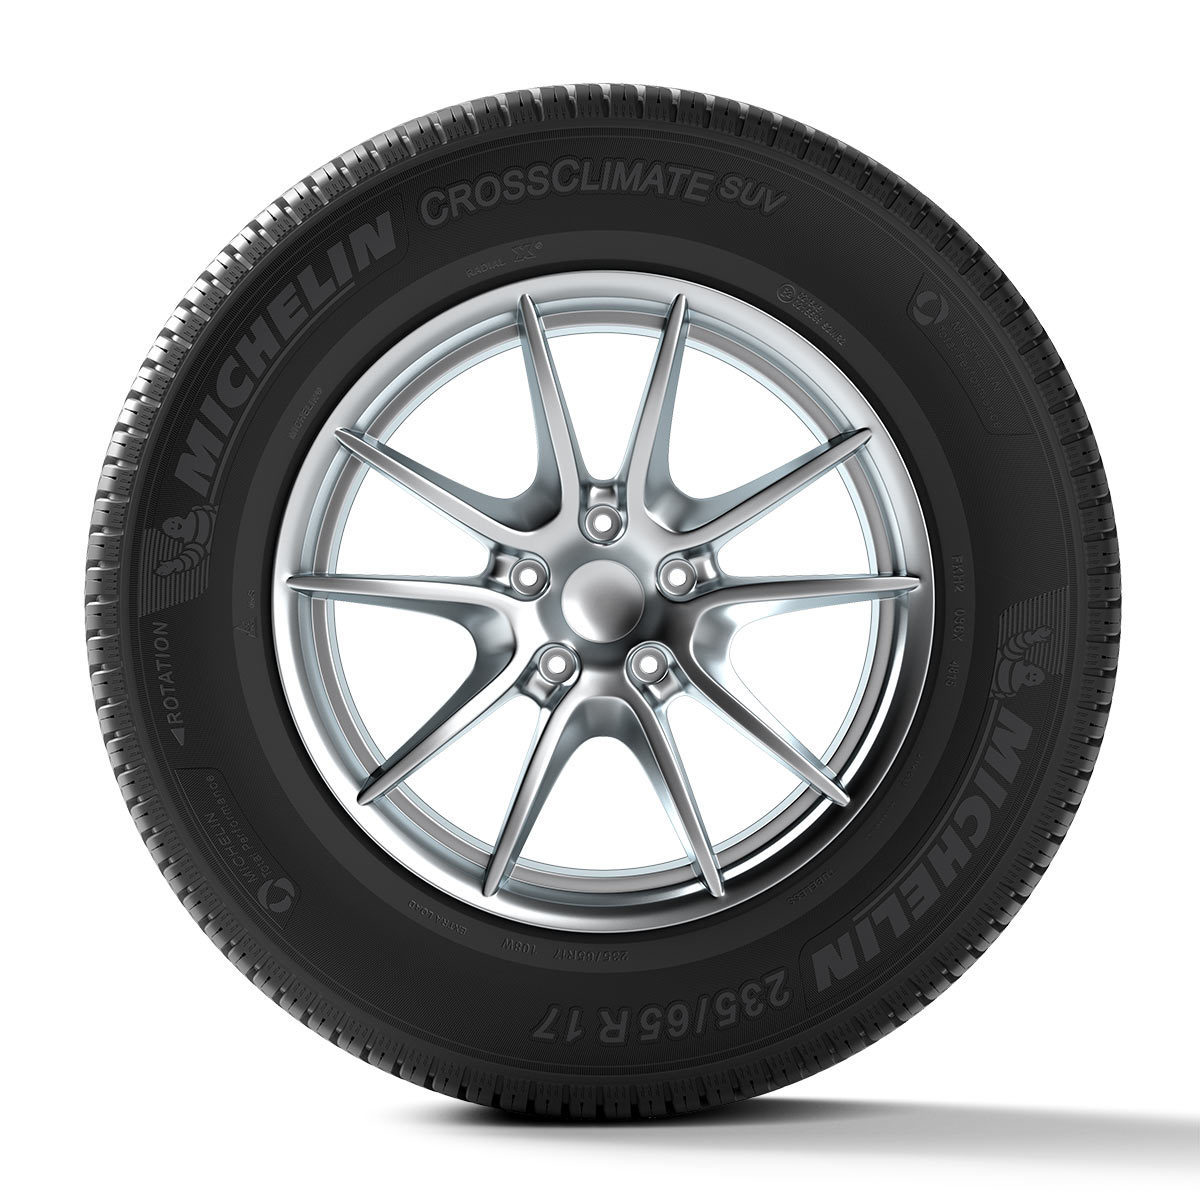 Michelin 235/60 R18 (103) V CROSSCLIMATE SUV AO